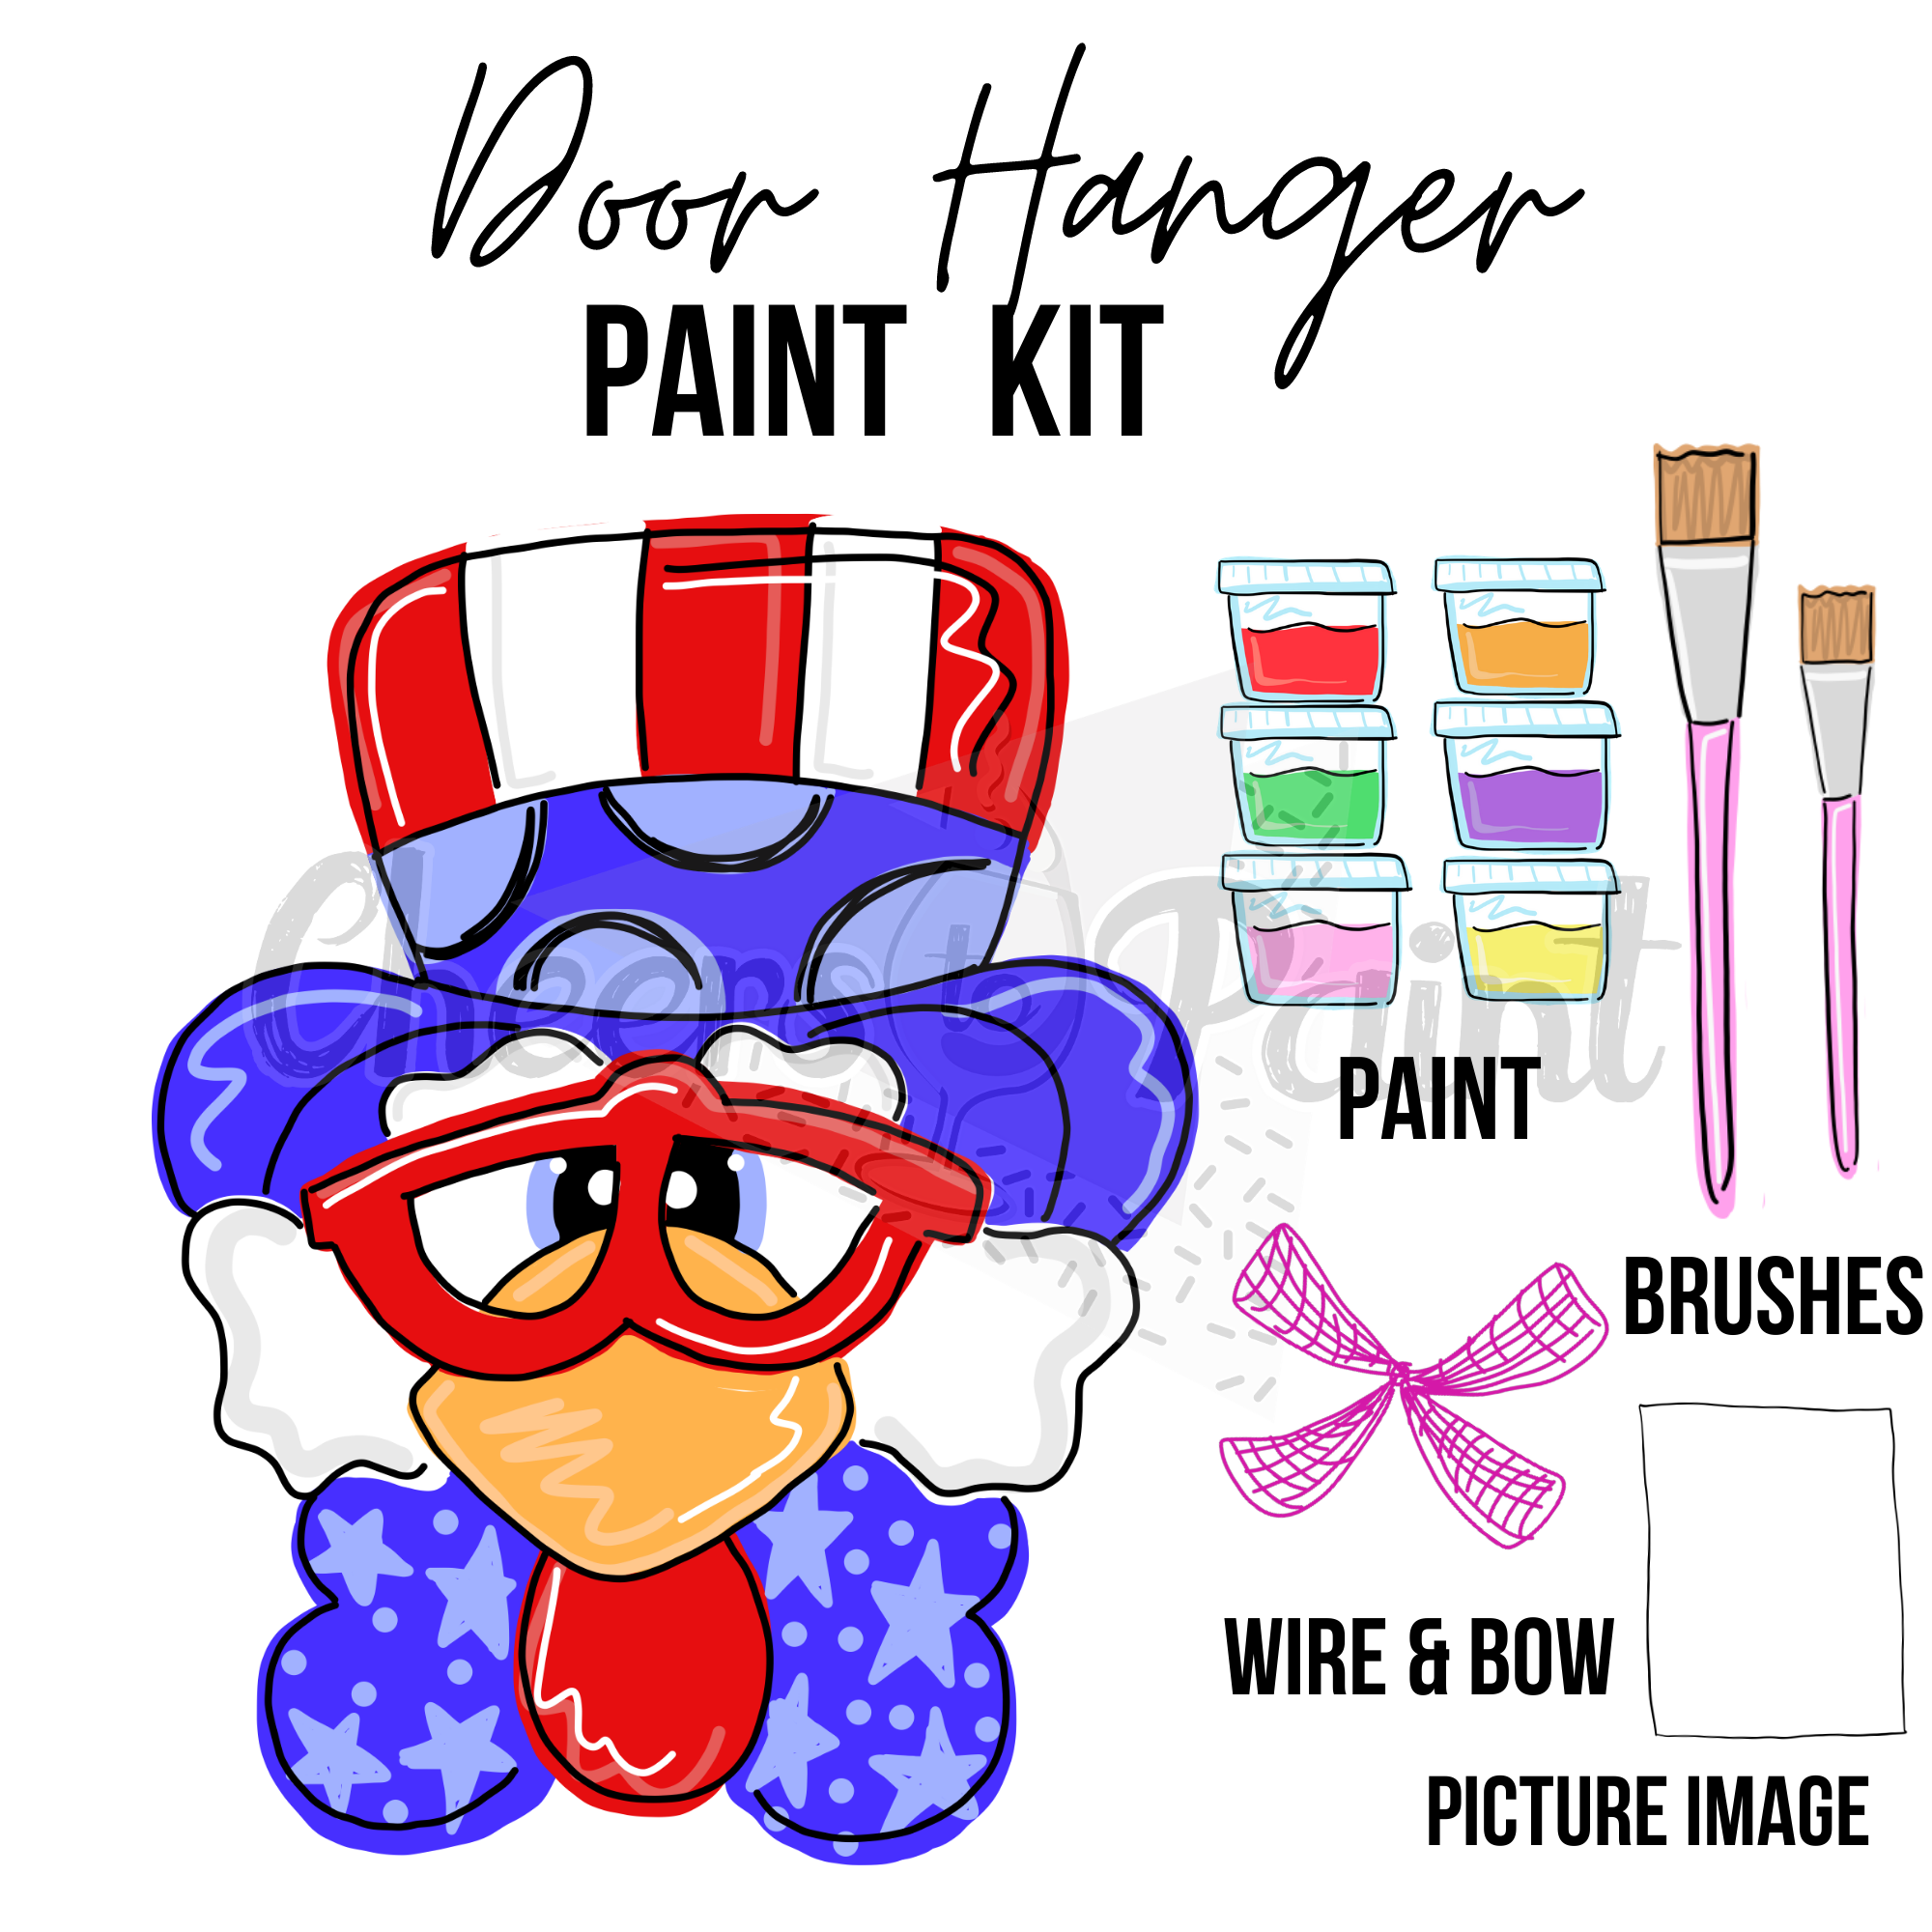 Patriotic Eagle- DIY Door Hanger Craft Wood Paint Kit